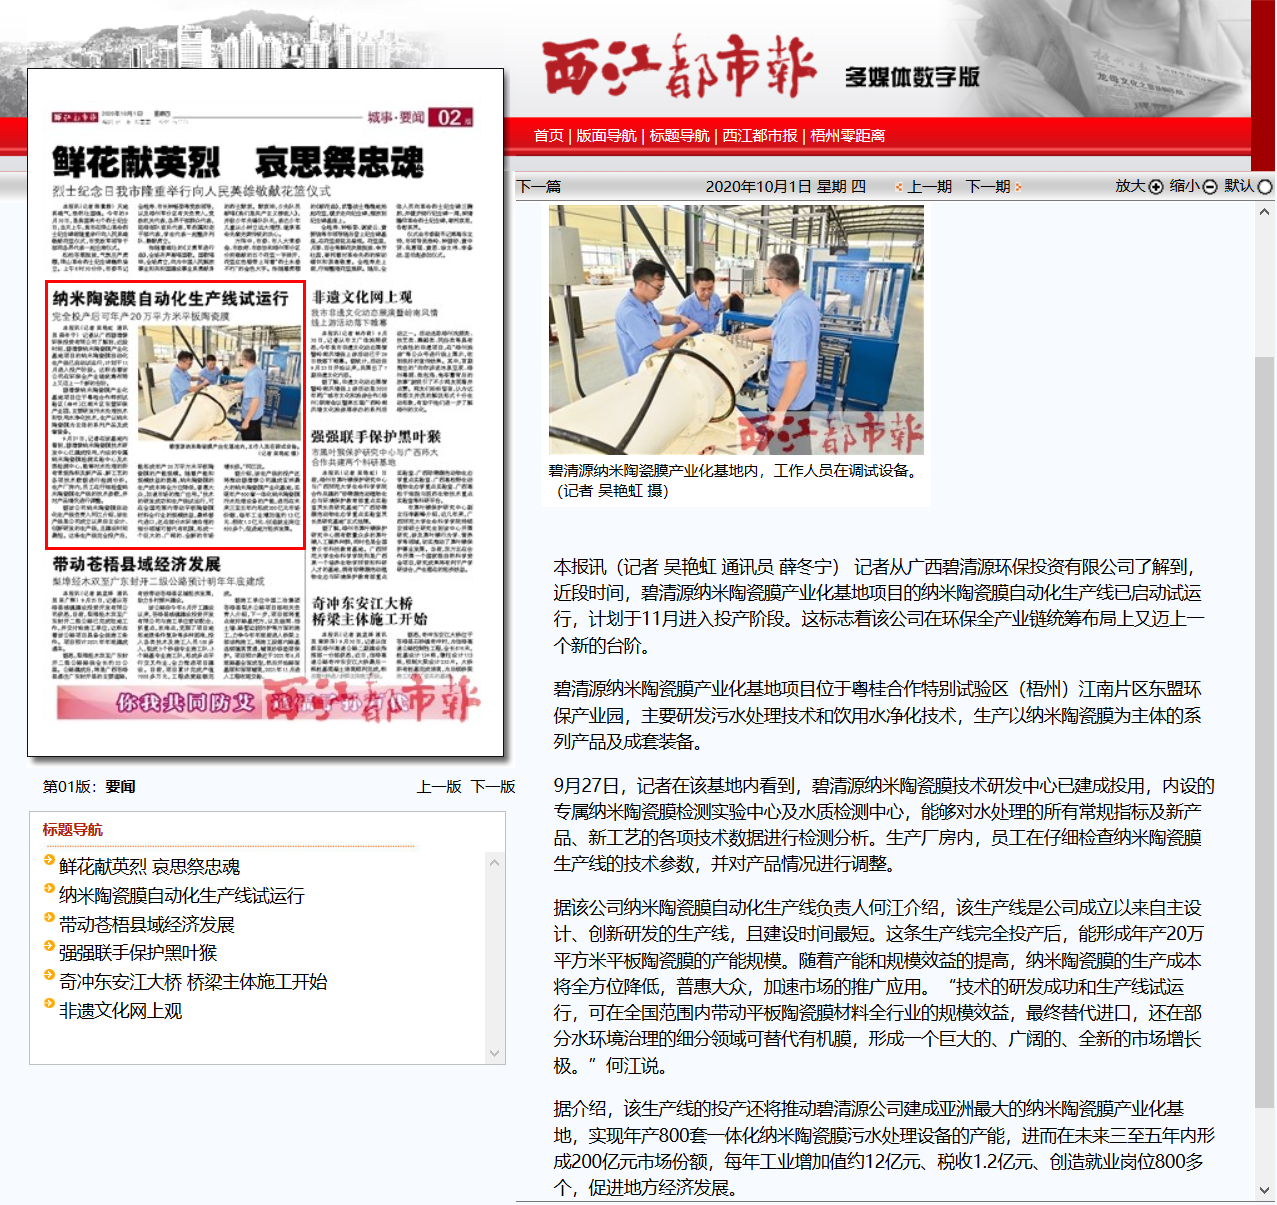 【西江都市报】纳米陶瓷膜自动化生产线试运行(图1)